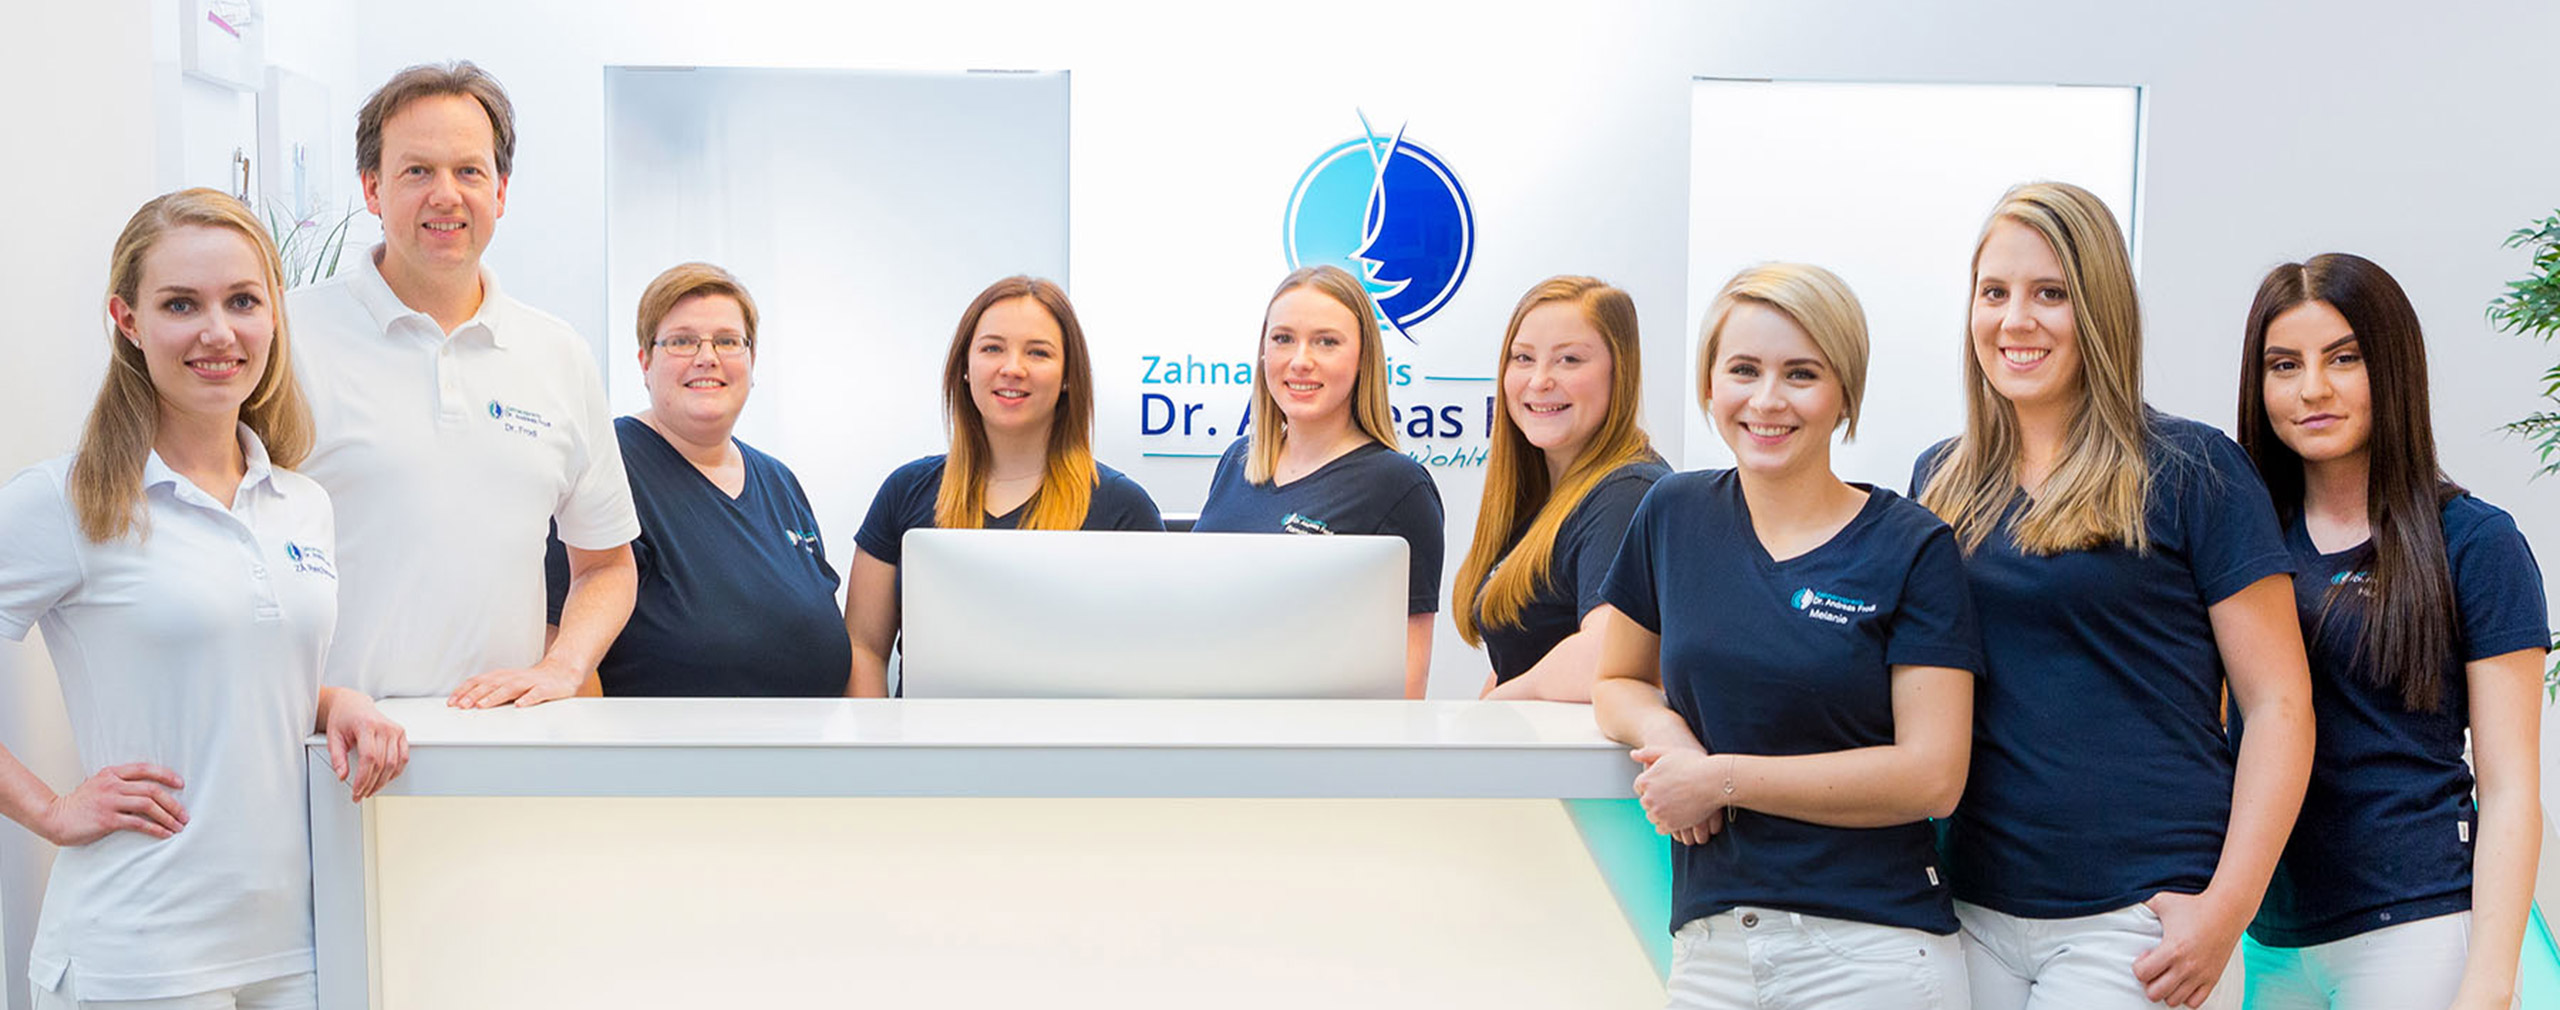 Zahnarzt Dr. Andreas Frodl mit seinen acht Mitarbeiterinnen in der Zahnarztpraxis Dr. Frodl